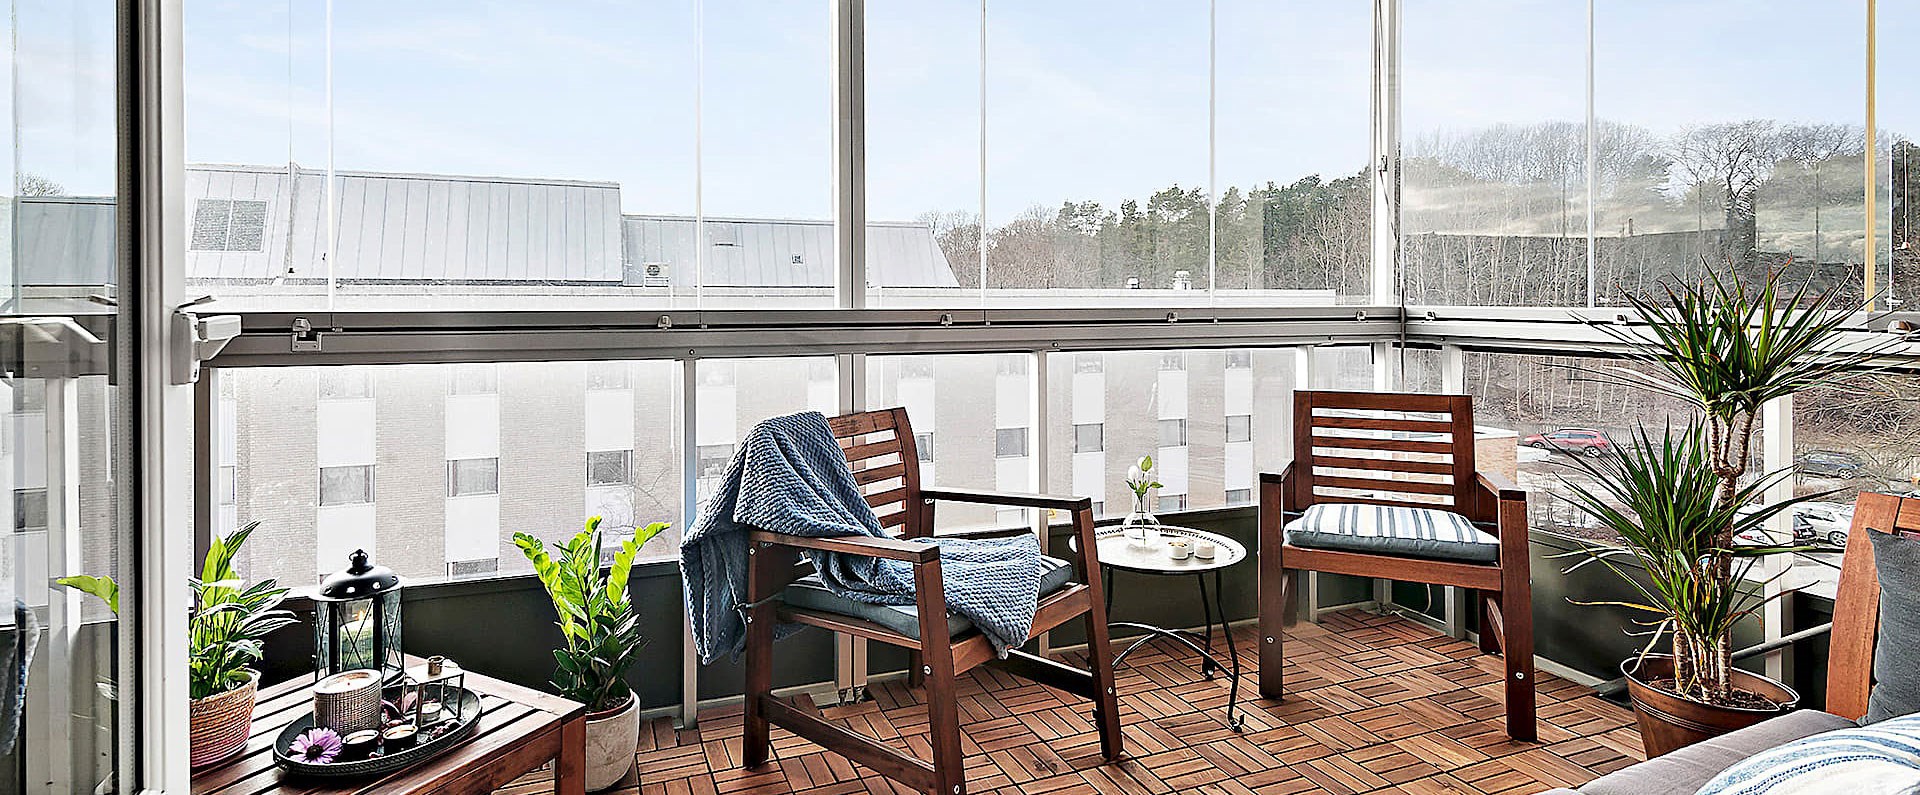 Inglasad balkong med möbler